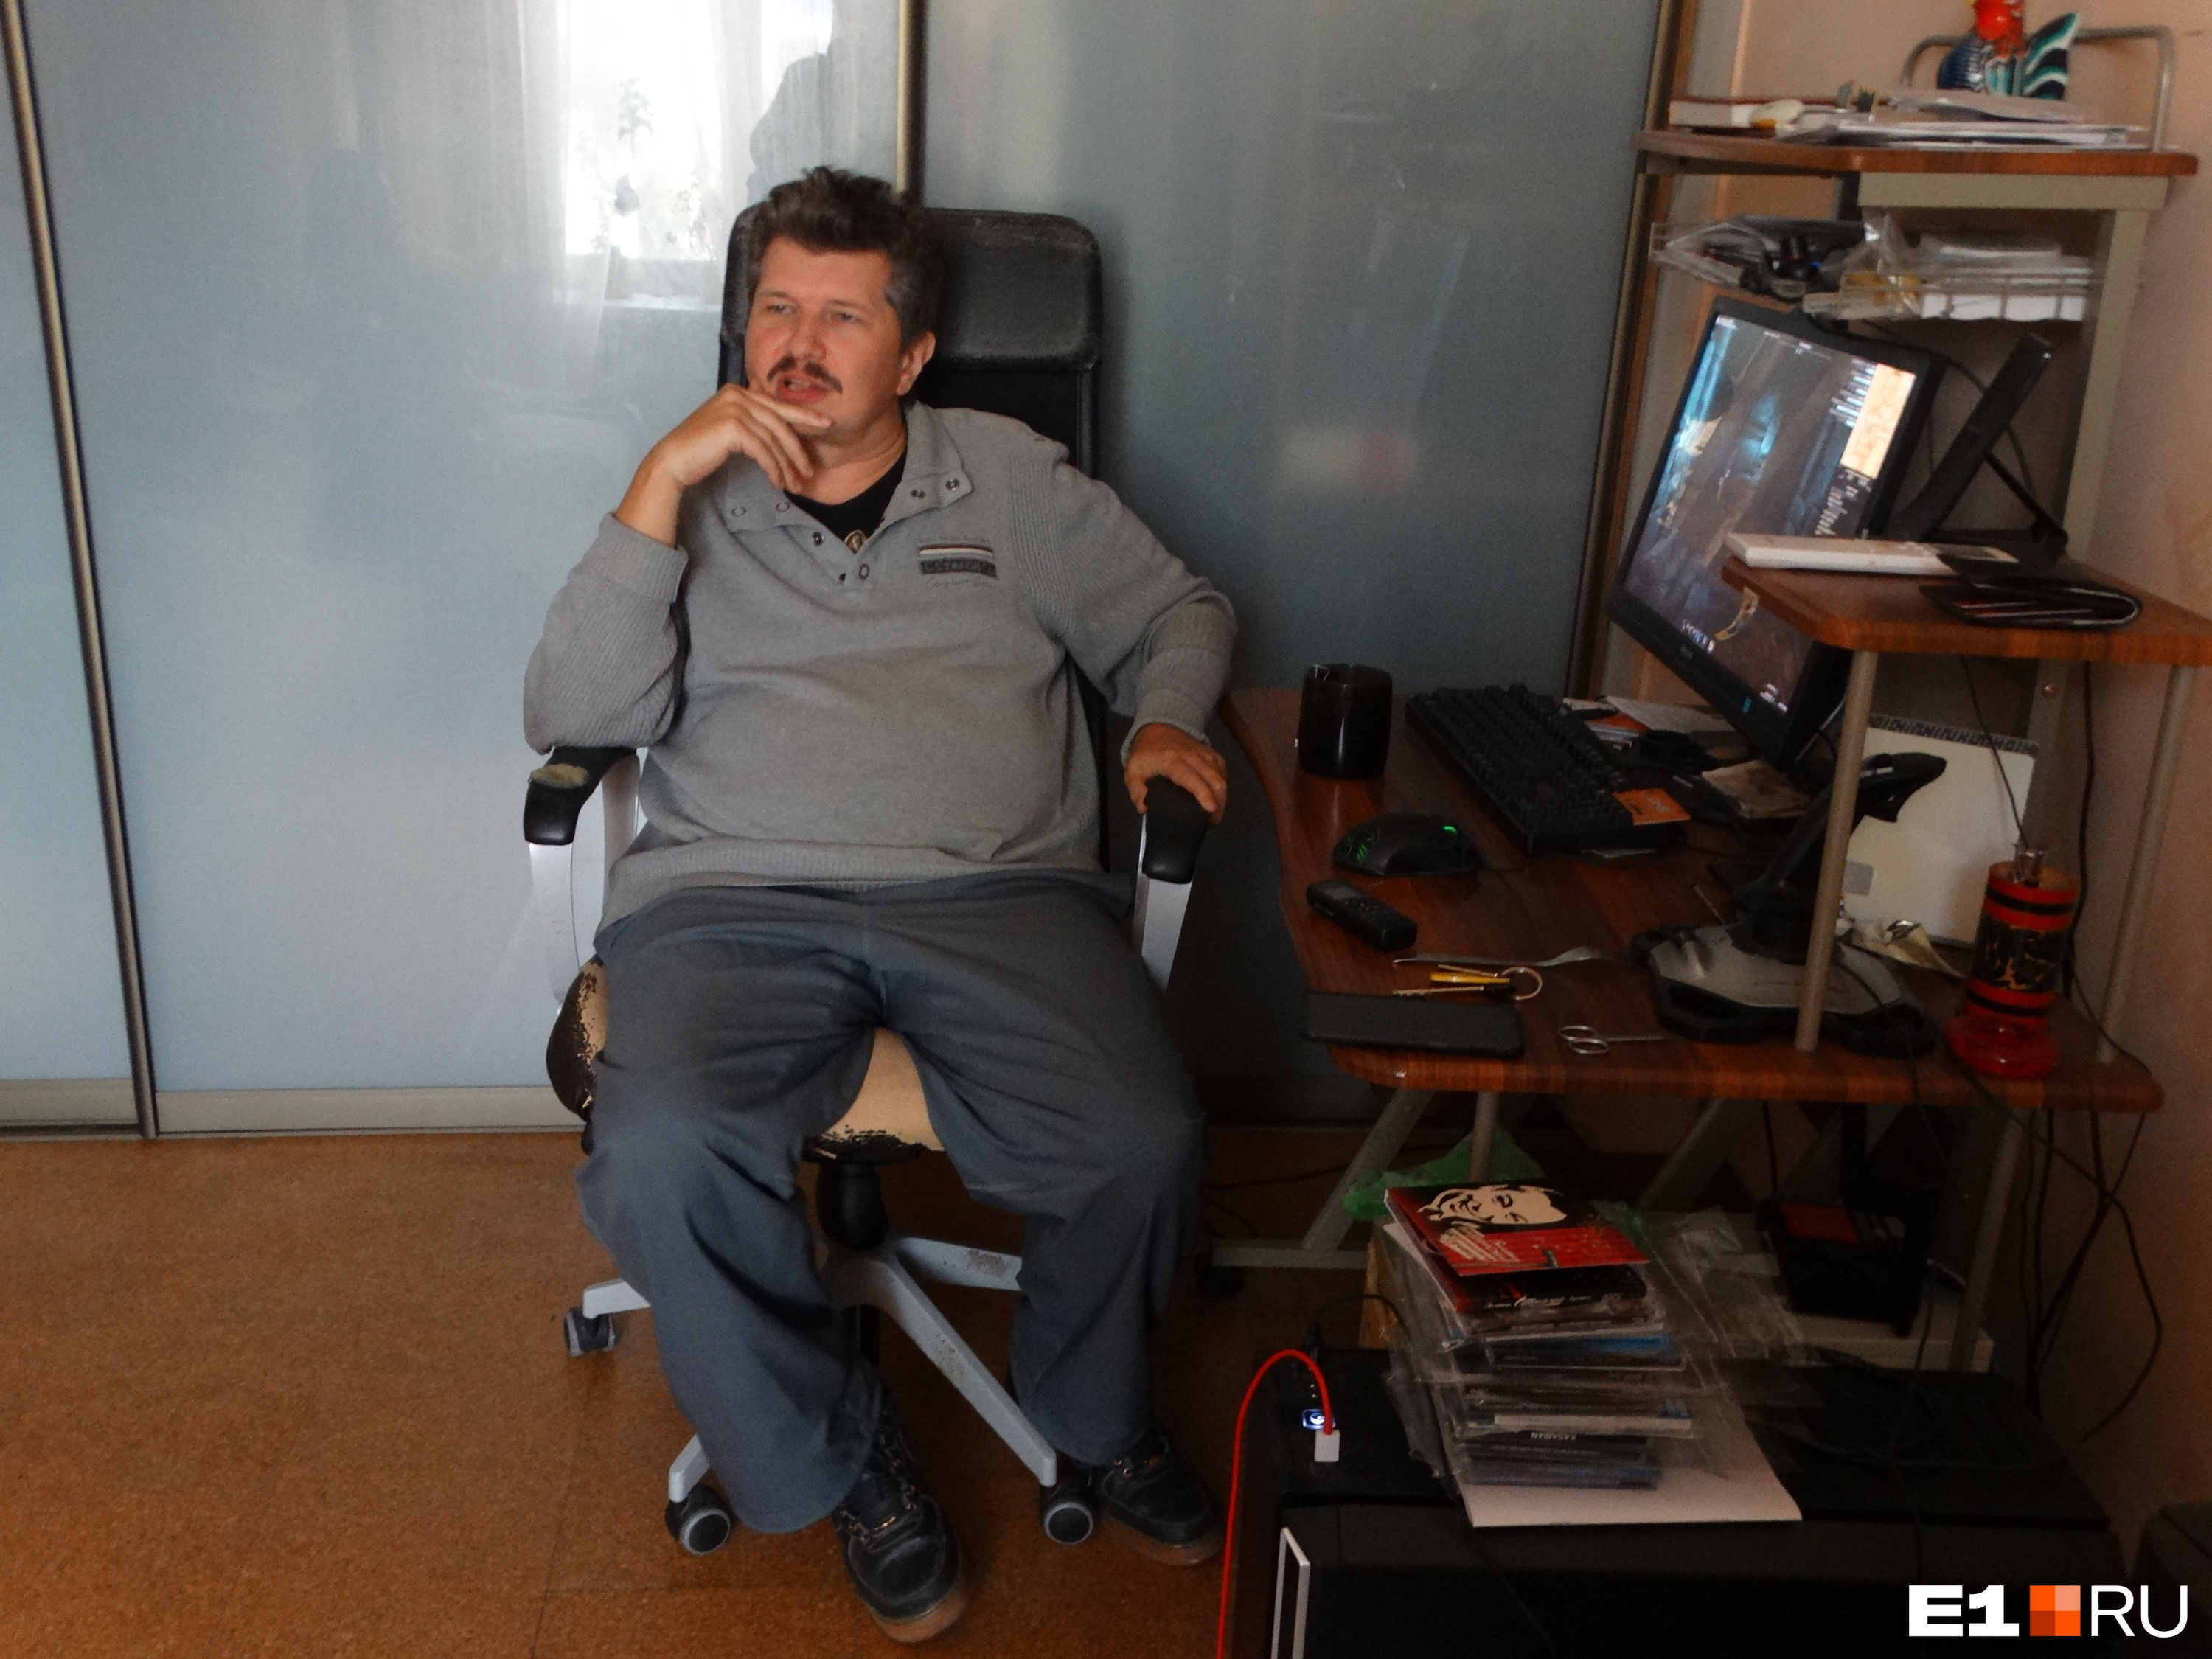 Программист Сергей Чечиков был заперт в горящей квартире